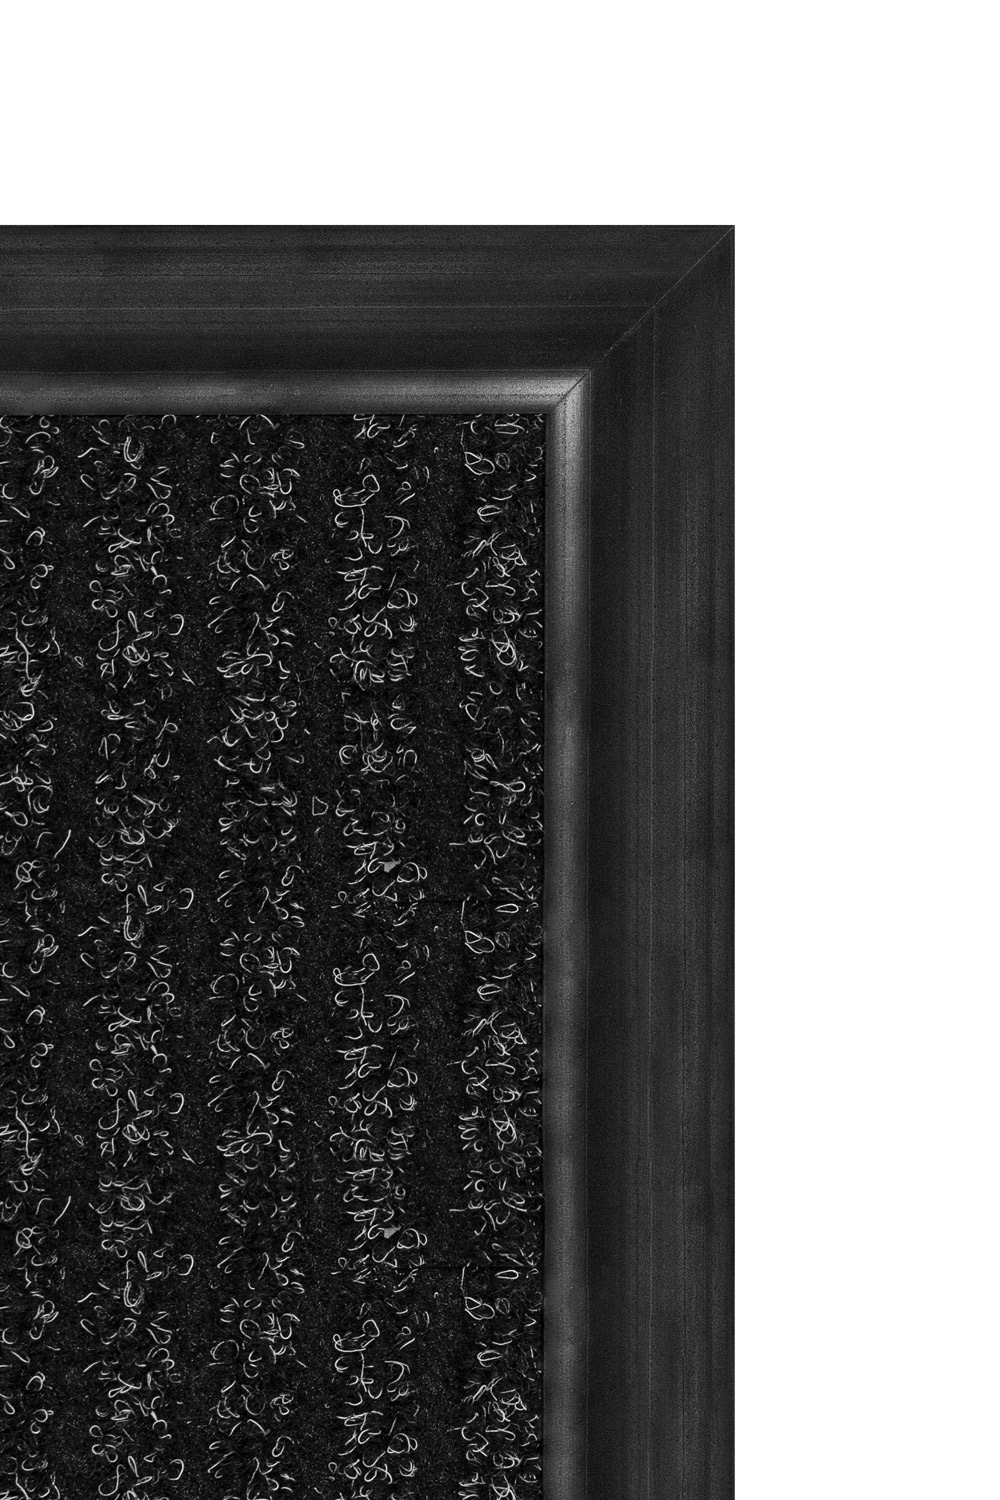 Gumová ukončovací lišta - černá 4,8x0,65 cm